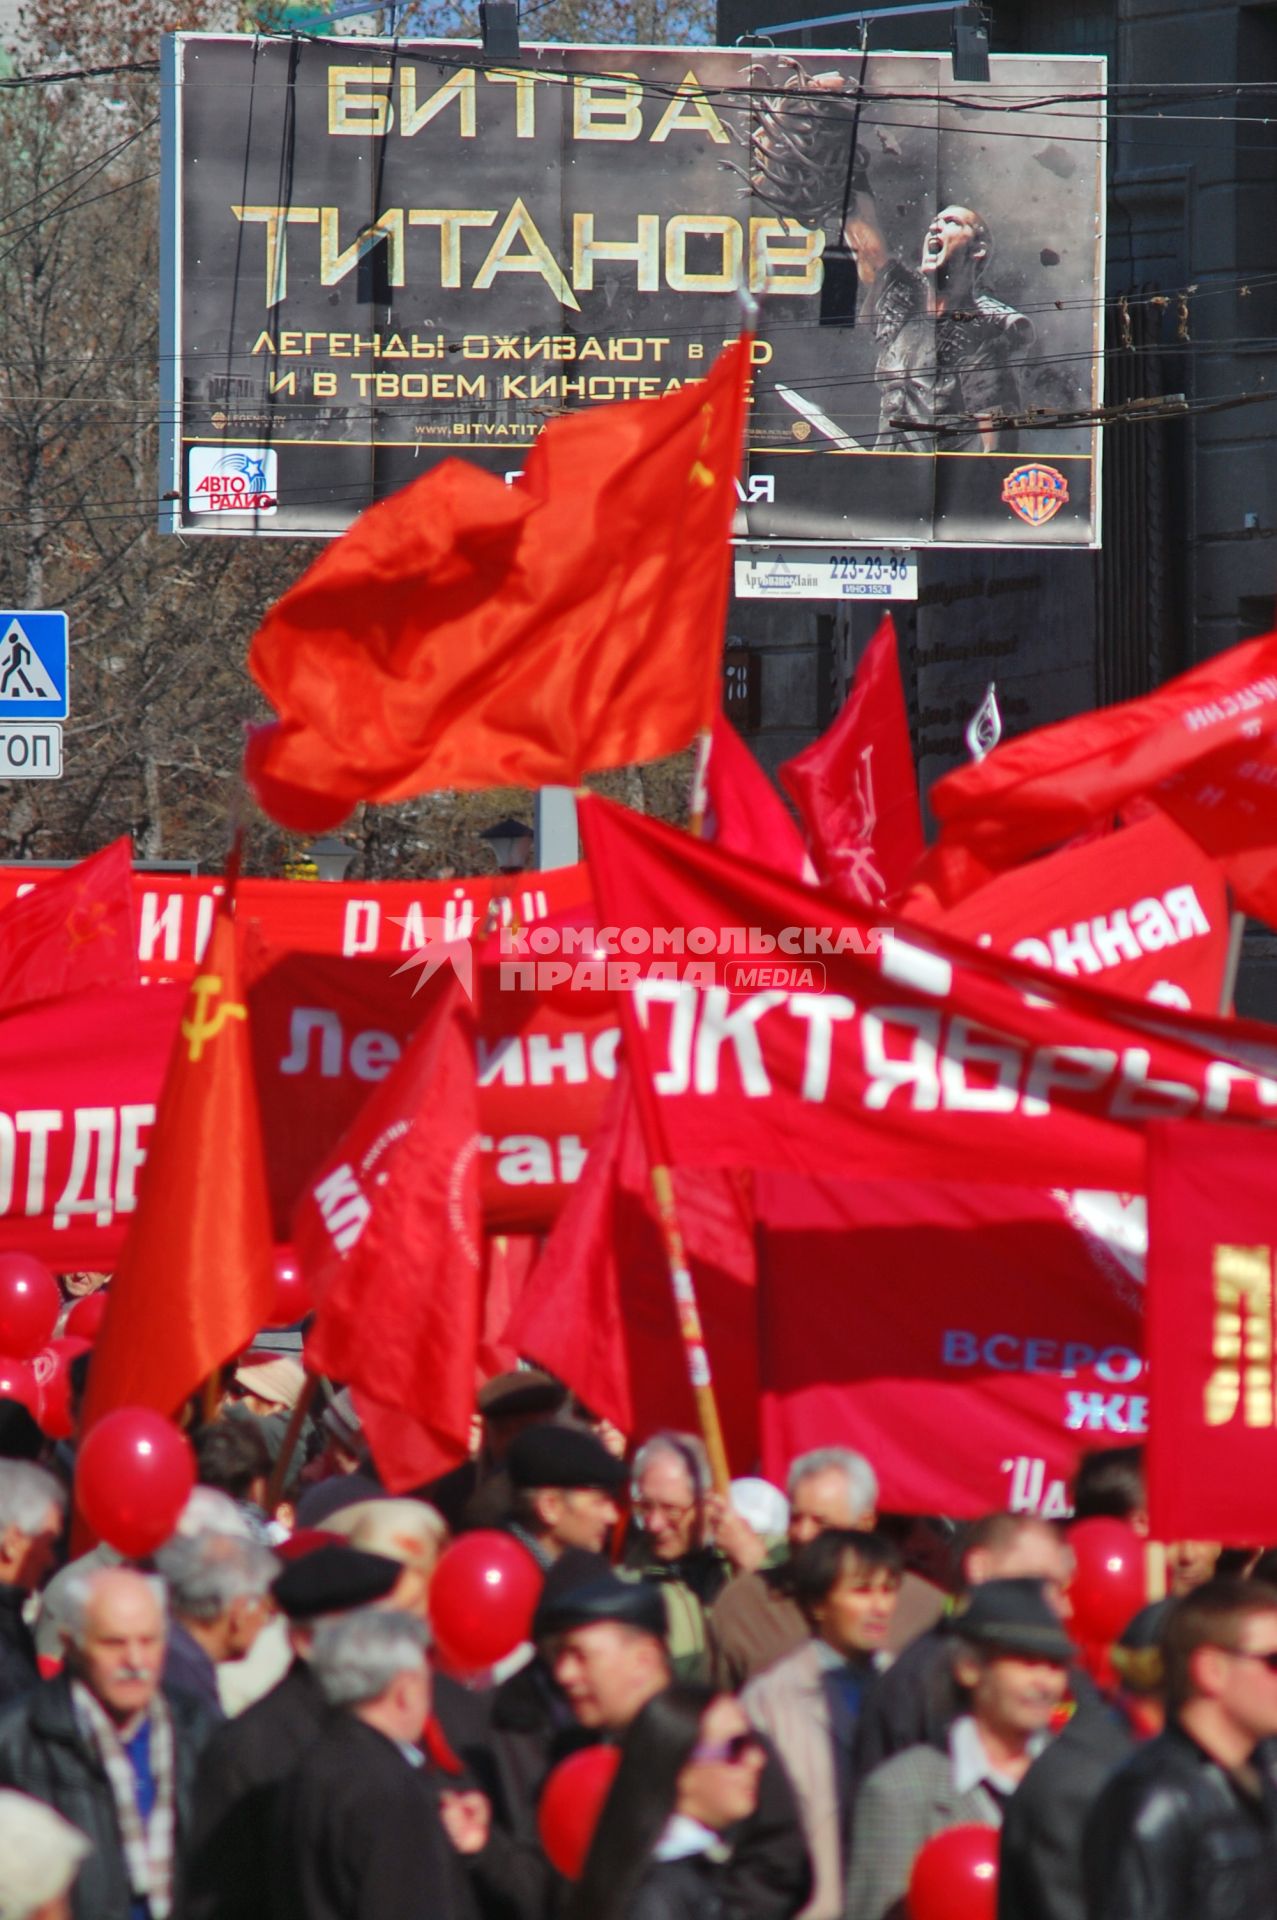 Митинг КПРФ на фоне рекламного плаката: `Битва титанов`